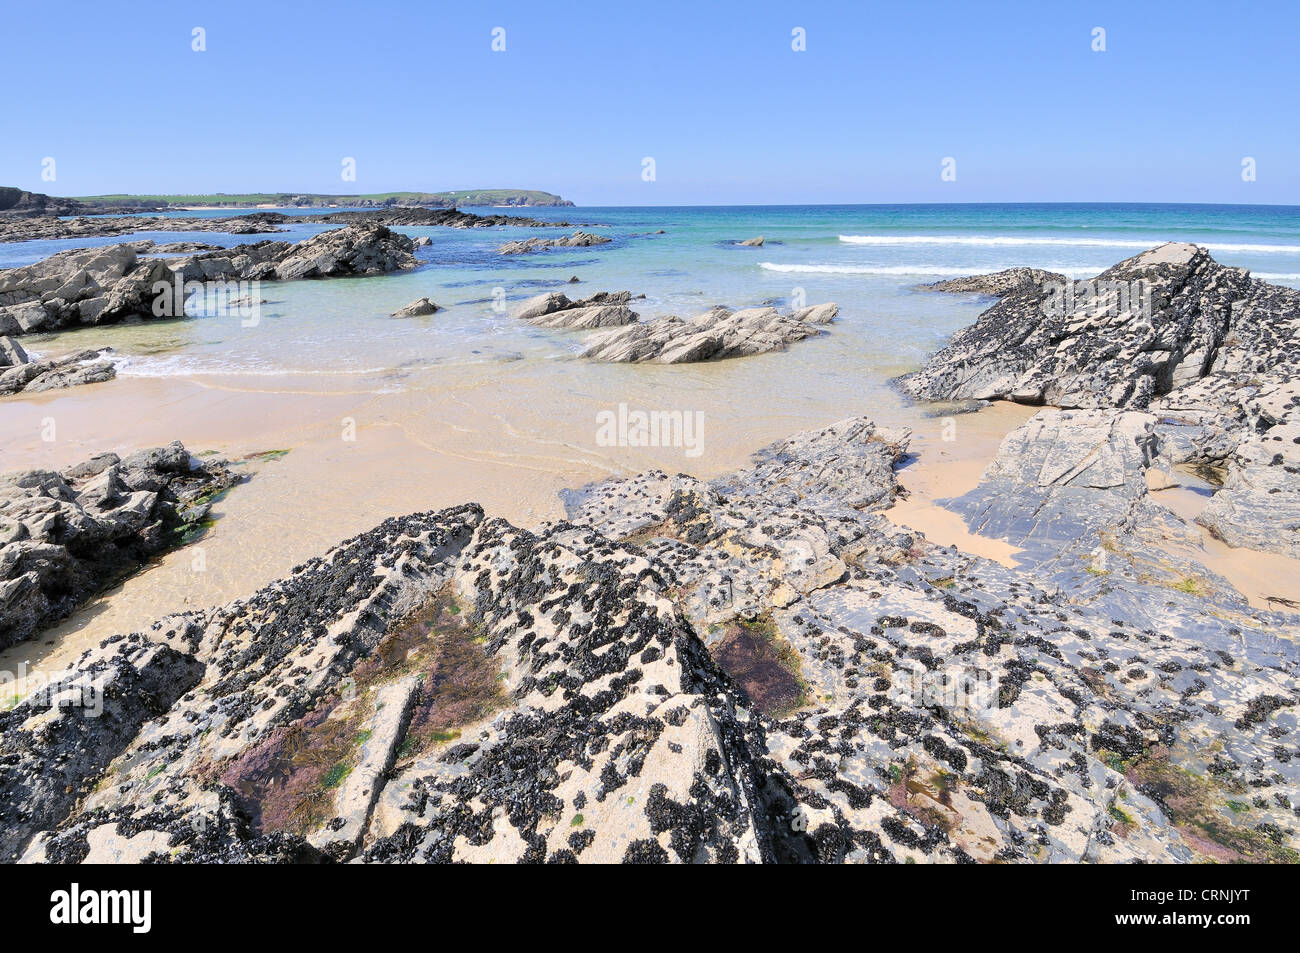 Playa con comunes de mejillones (Mytilus edulis) adjunta a las rocas durante la marea baja en la bahía de Constantino. Foto de stock